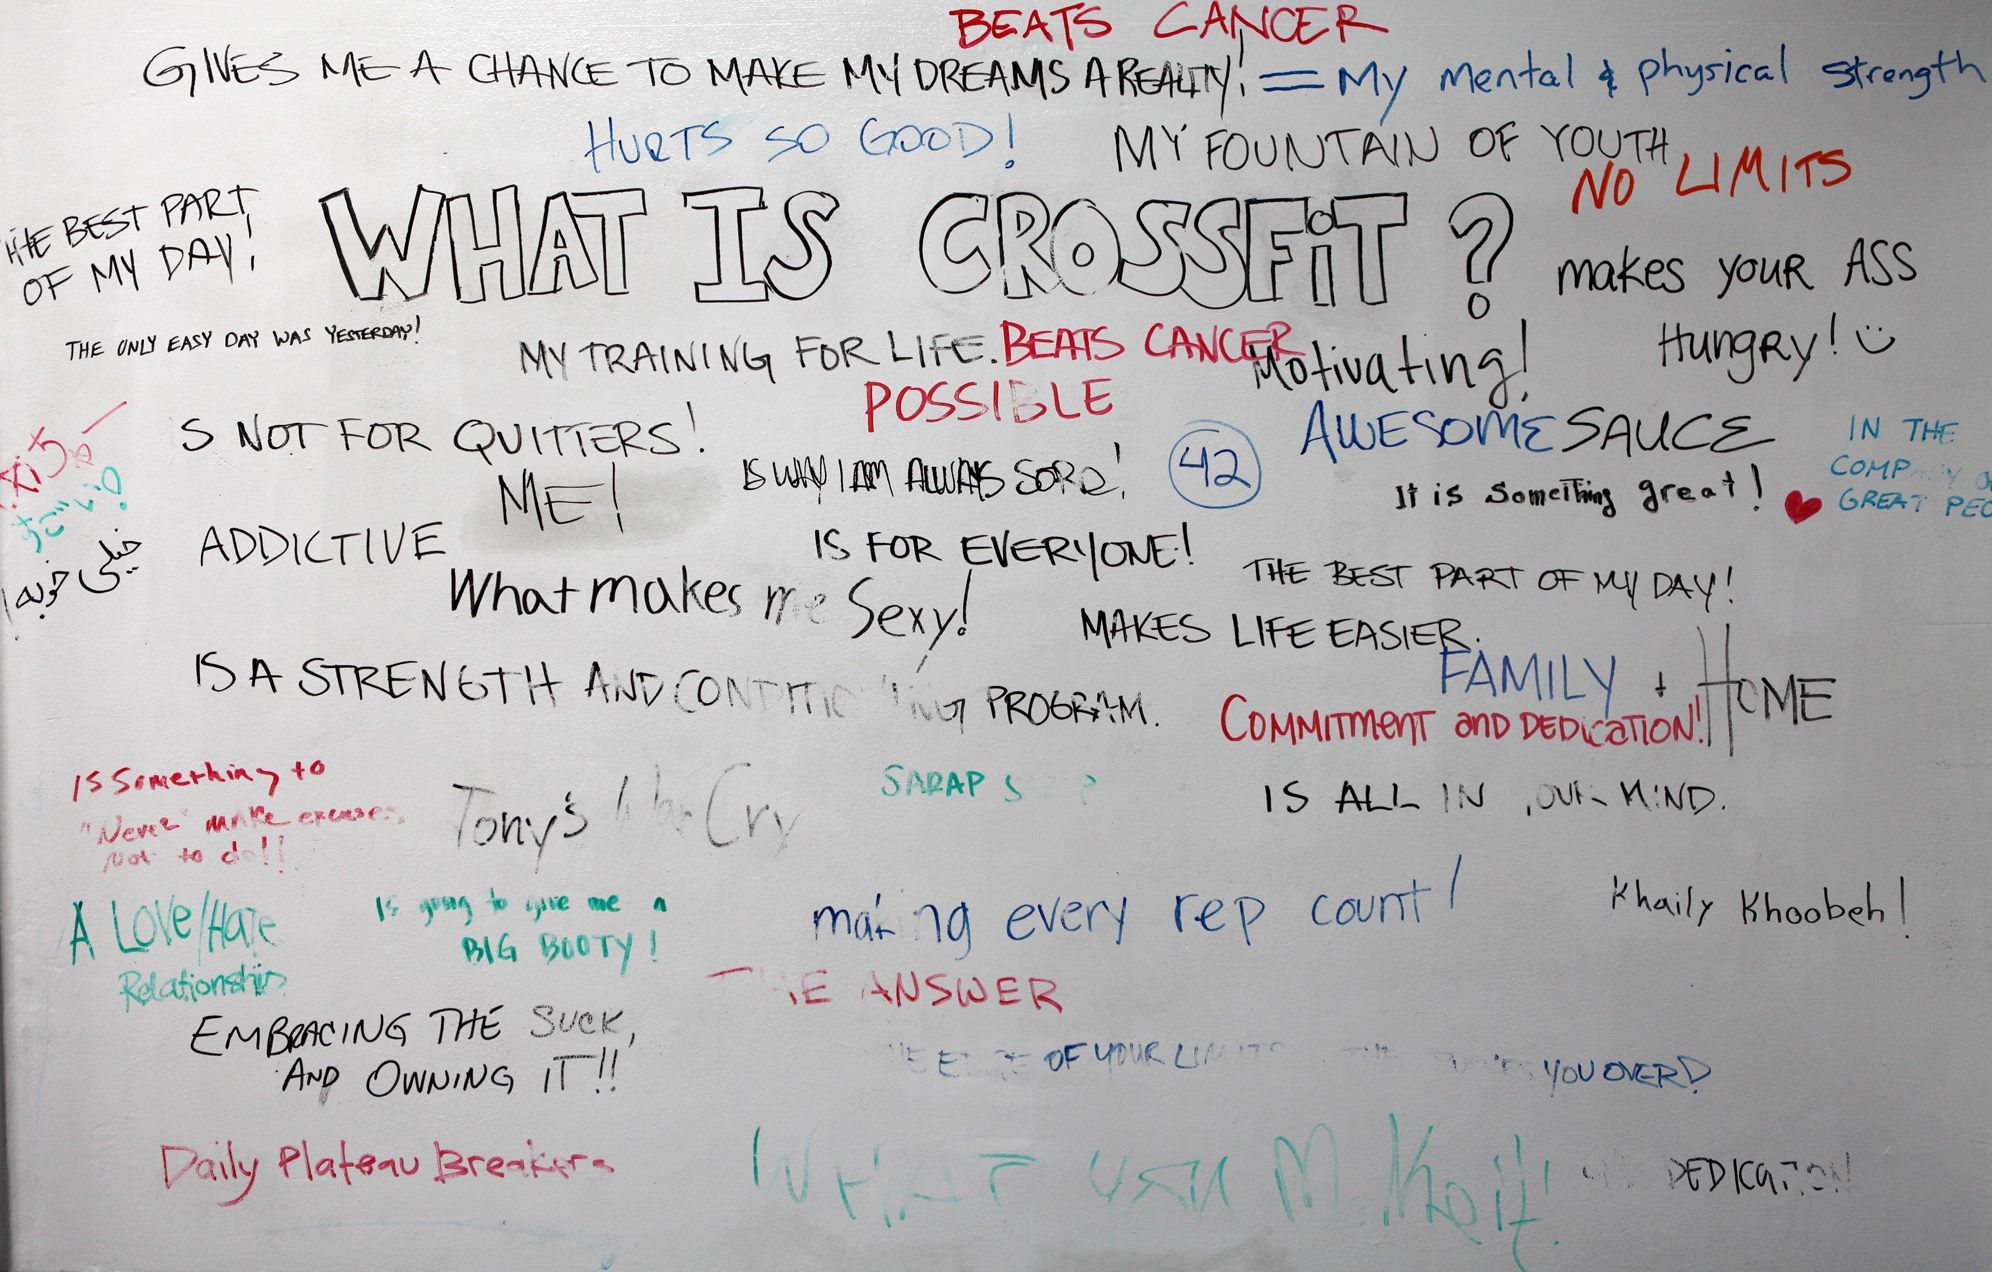 What is Crossfit? | BRAVO CROSSFIT